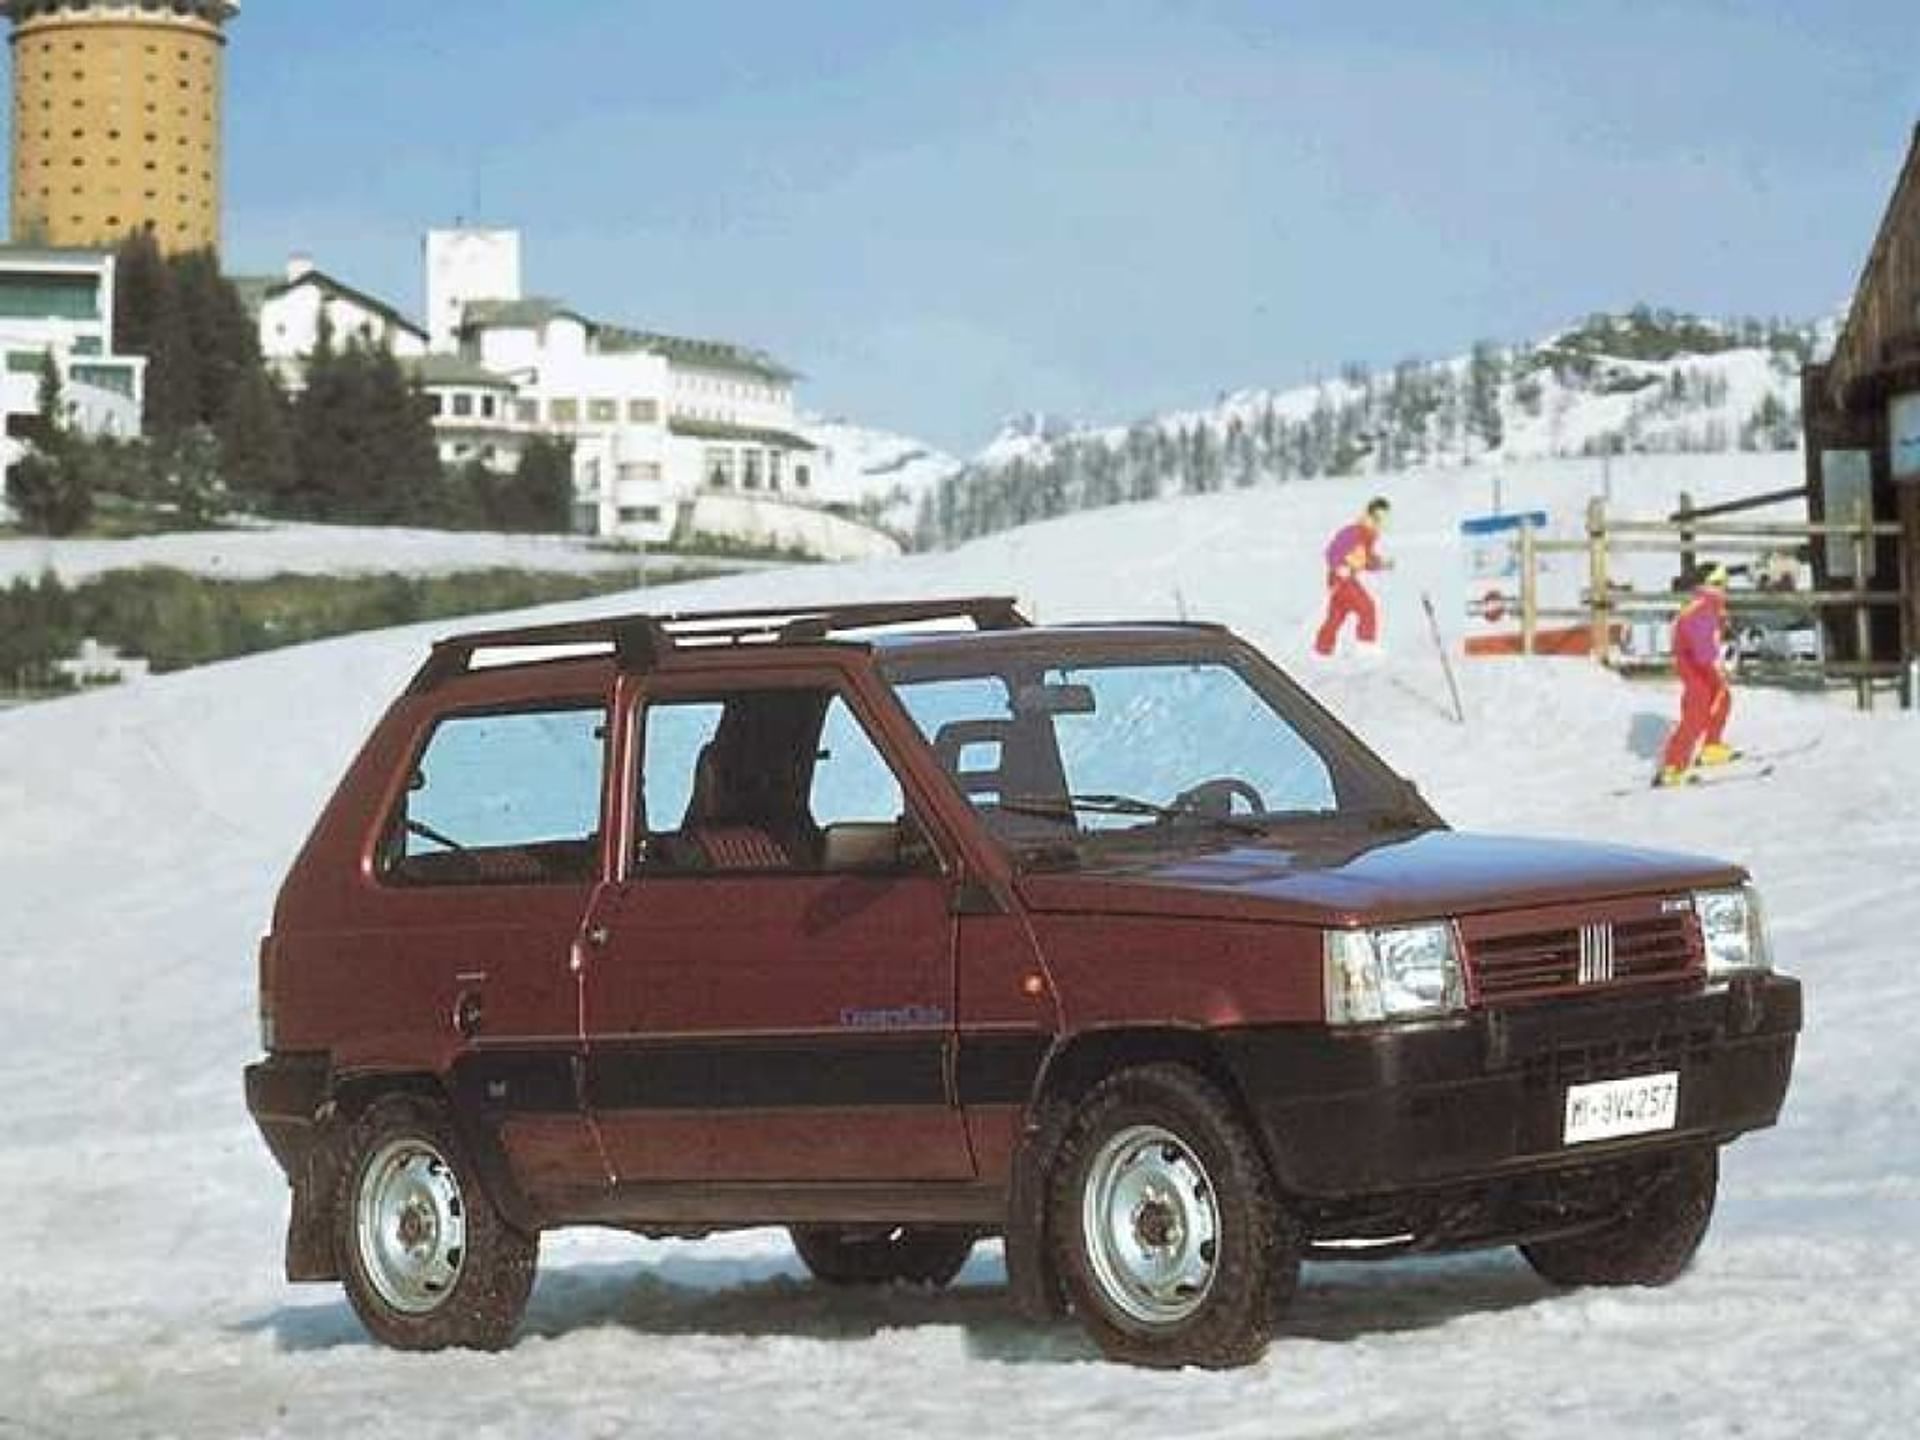 Fiat Panda 1100